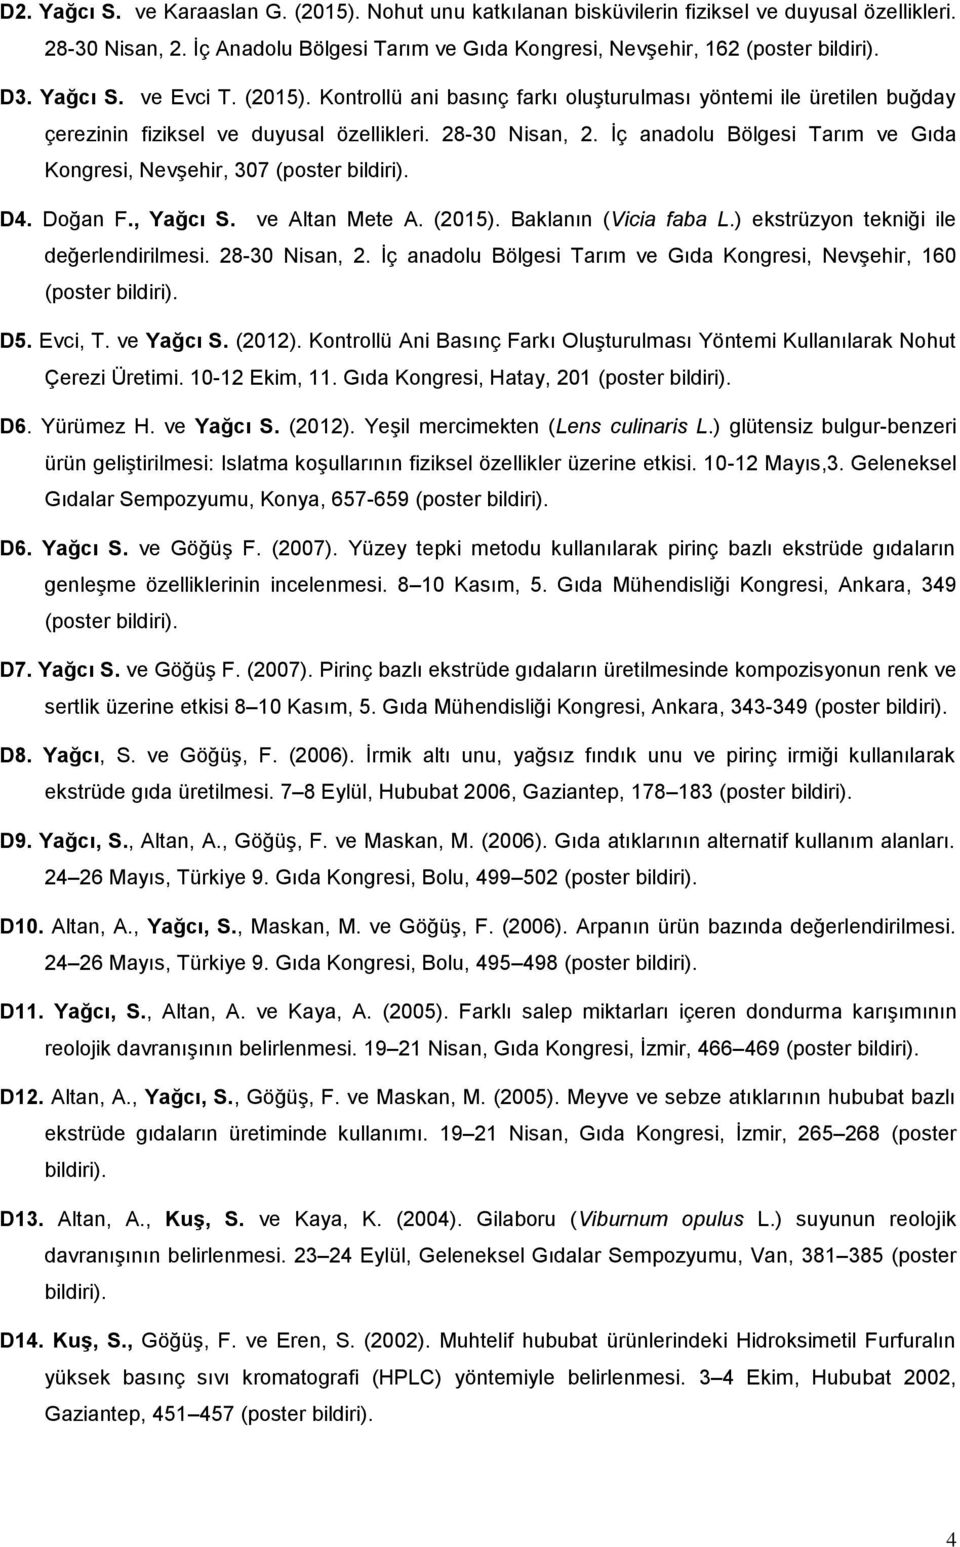 İç anadolu Bölgesi Tarım ve Gıda Kongresi, Nevşehir, 307 (poster bildiri). D4. Doğan F., Yağcı S. ve Altan Mete A. (2015). Baklanın (Vicia faba L.) ekstrüzyon tekniği ile değerlendirilmesi.